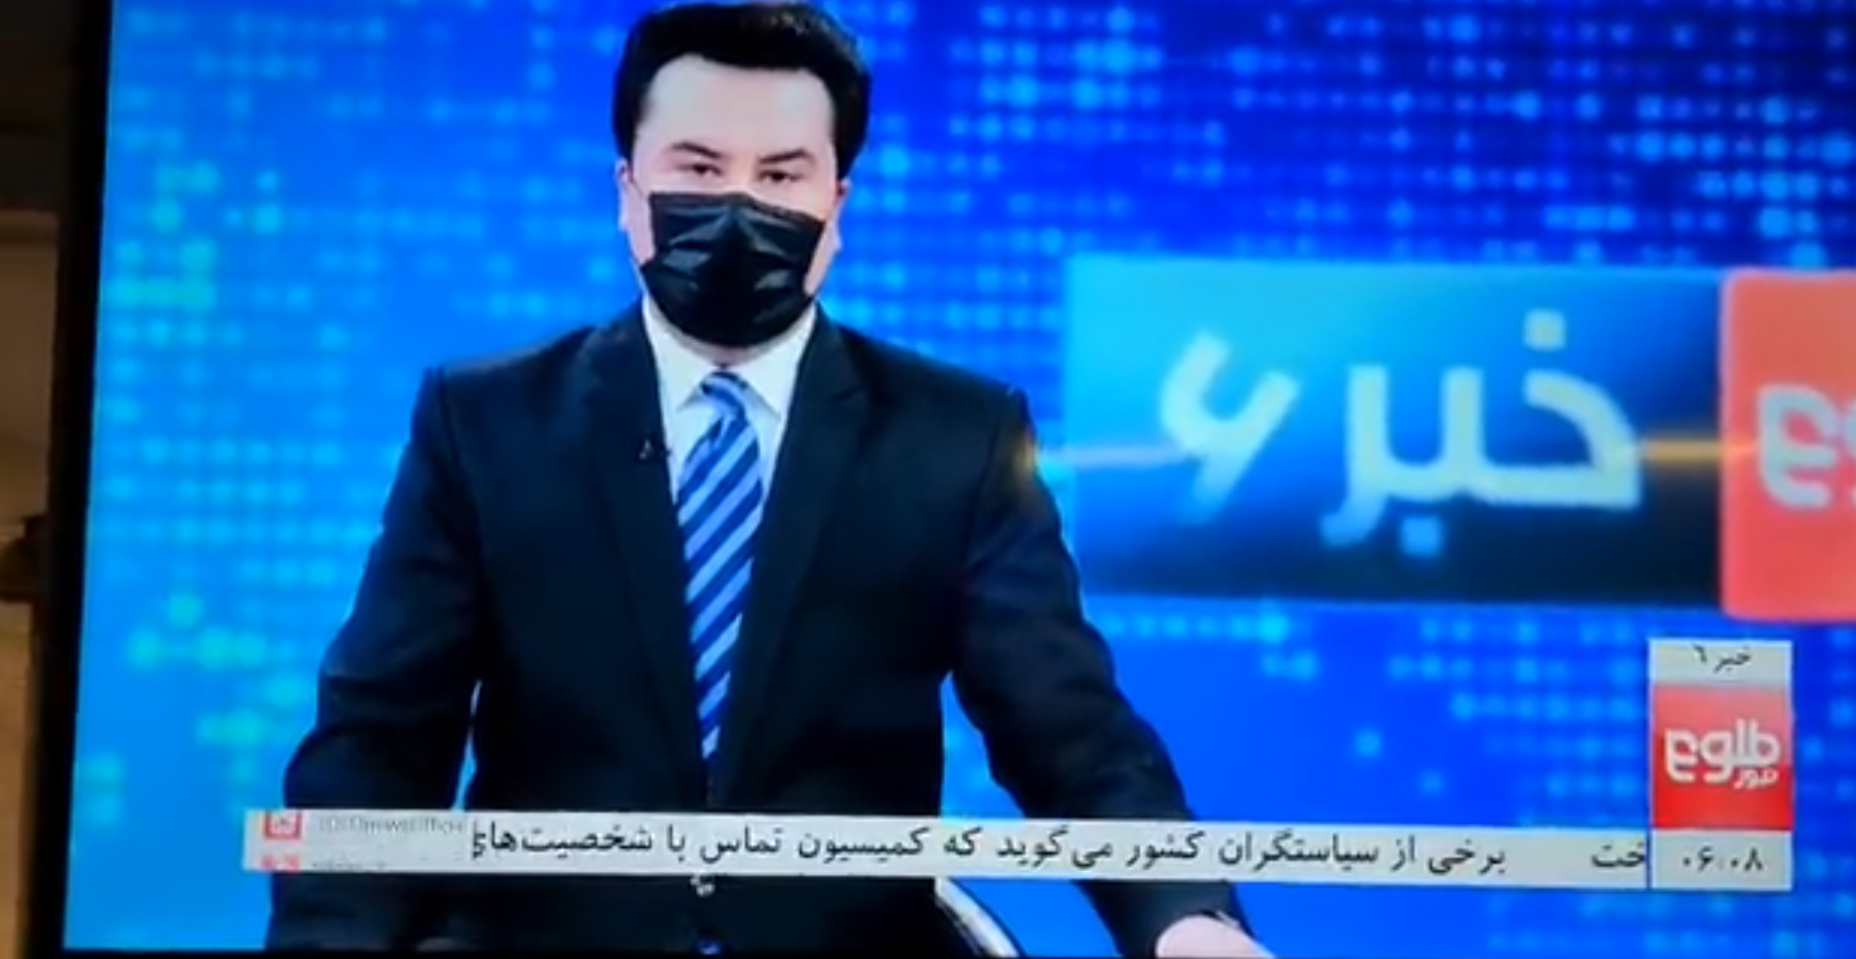 &#8220;Free Her Face&#8221;: Apresentadores de televisão afegãos tapam a cara num gesto de solidariedade com colegas do sexo feminino